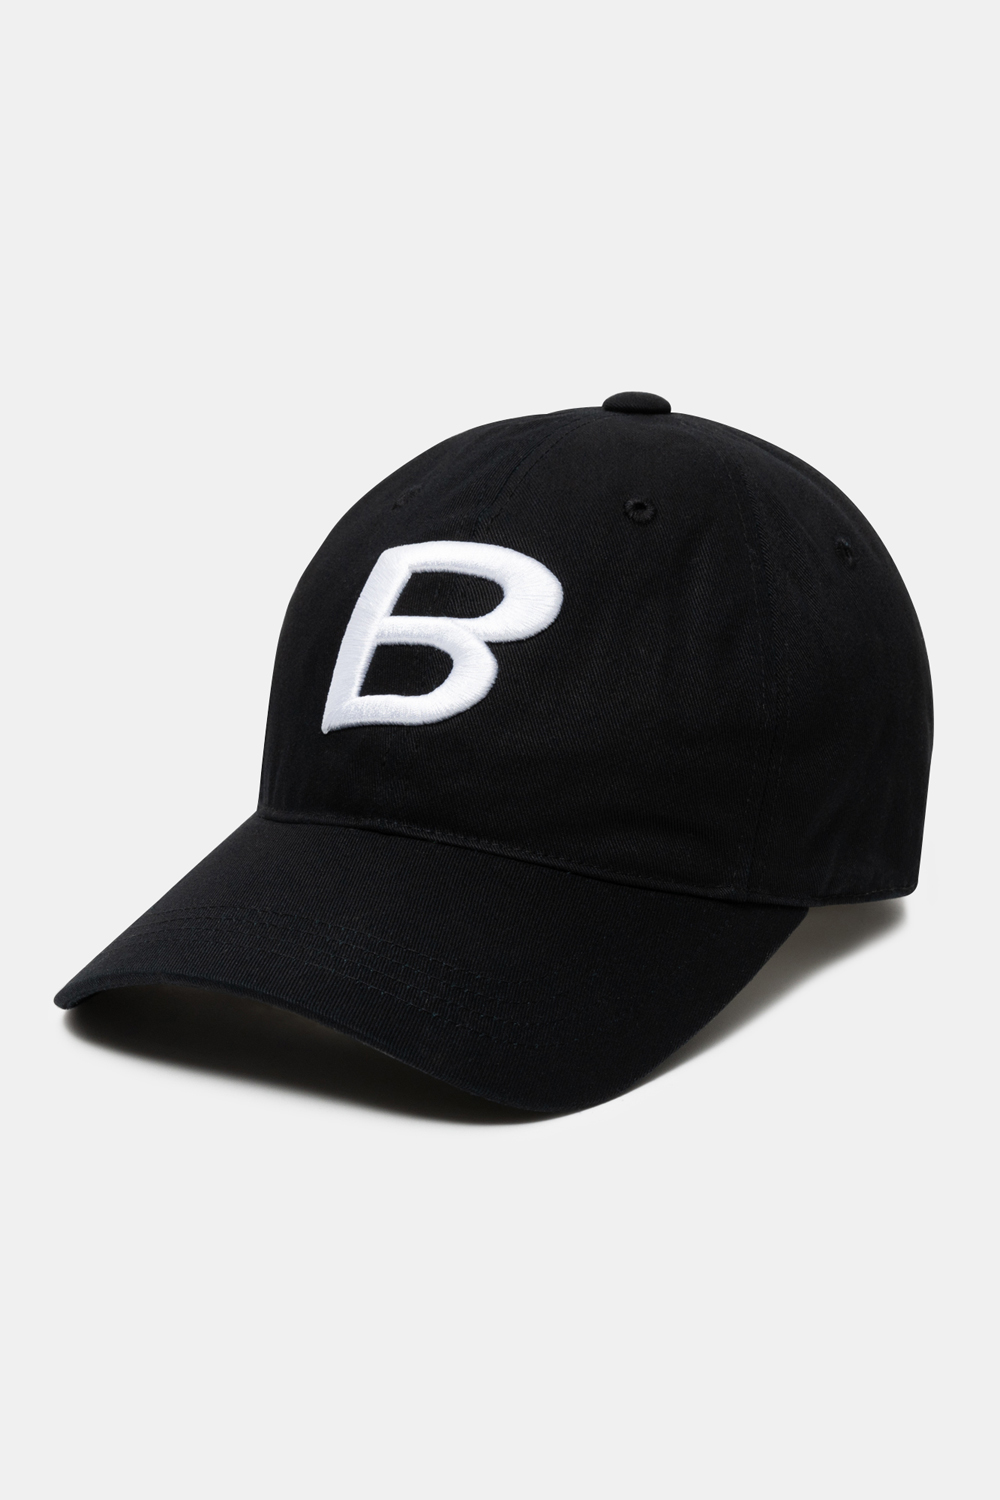 B LOGO BALL CAP - BLACK